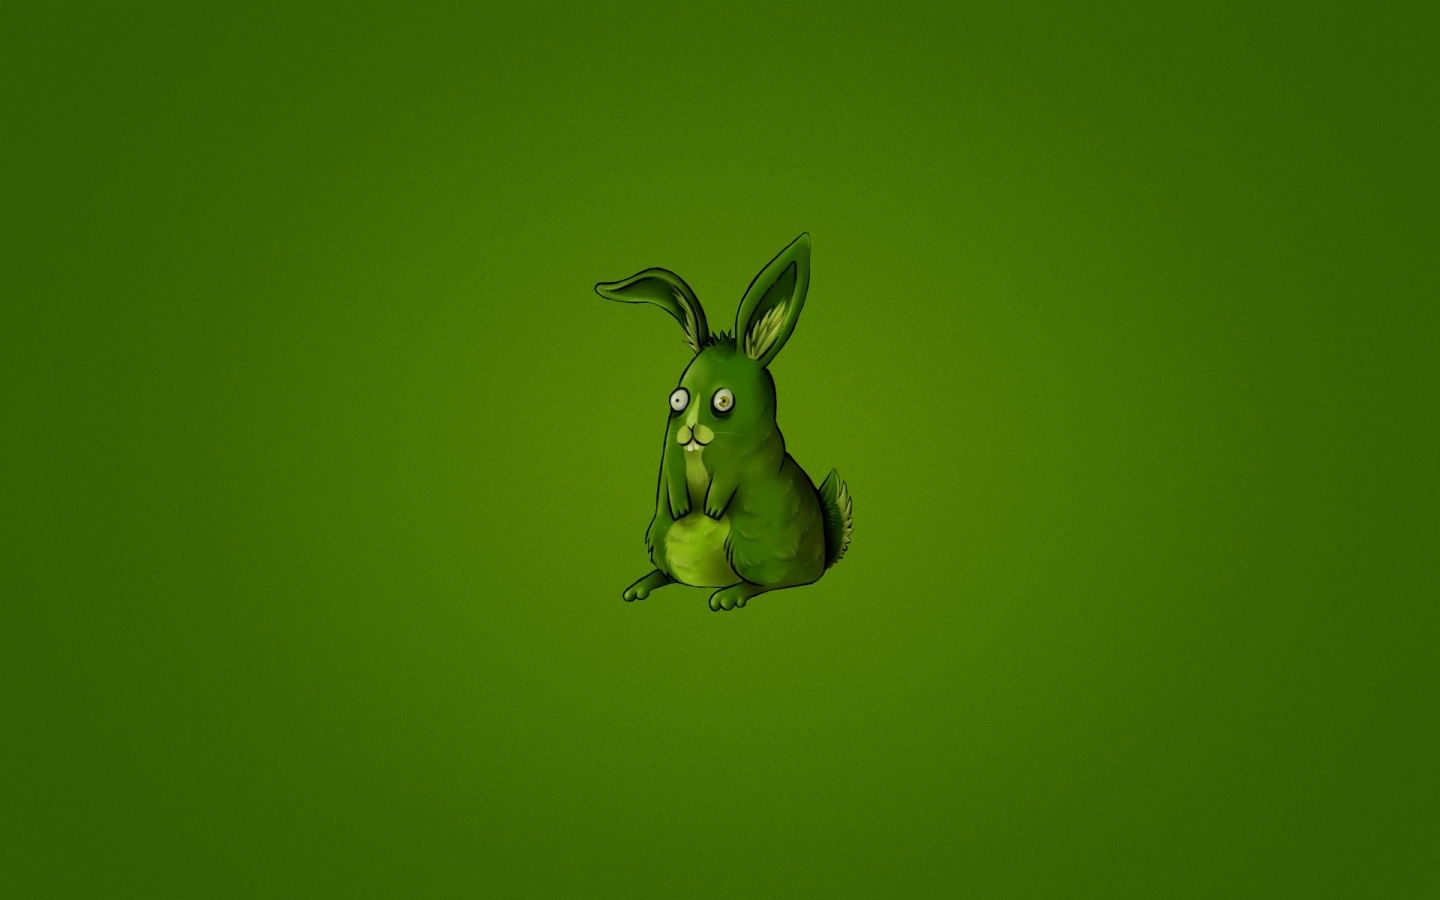 Cute Little Rabbit for 1440 x 900 widescreen resolution